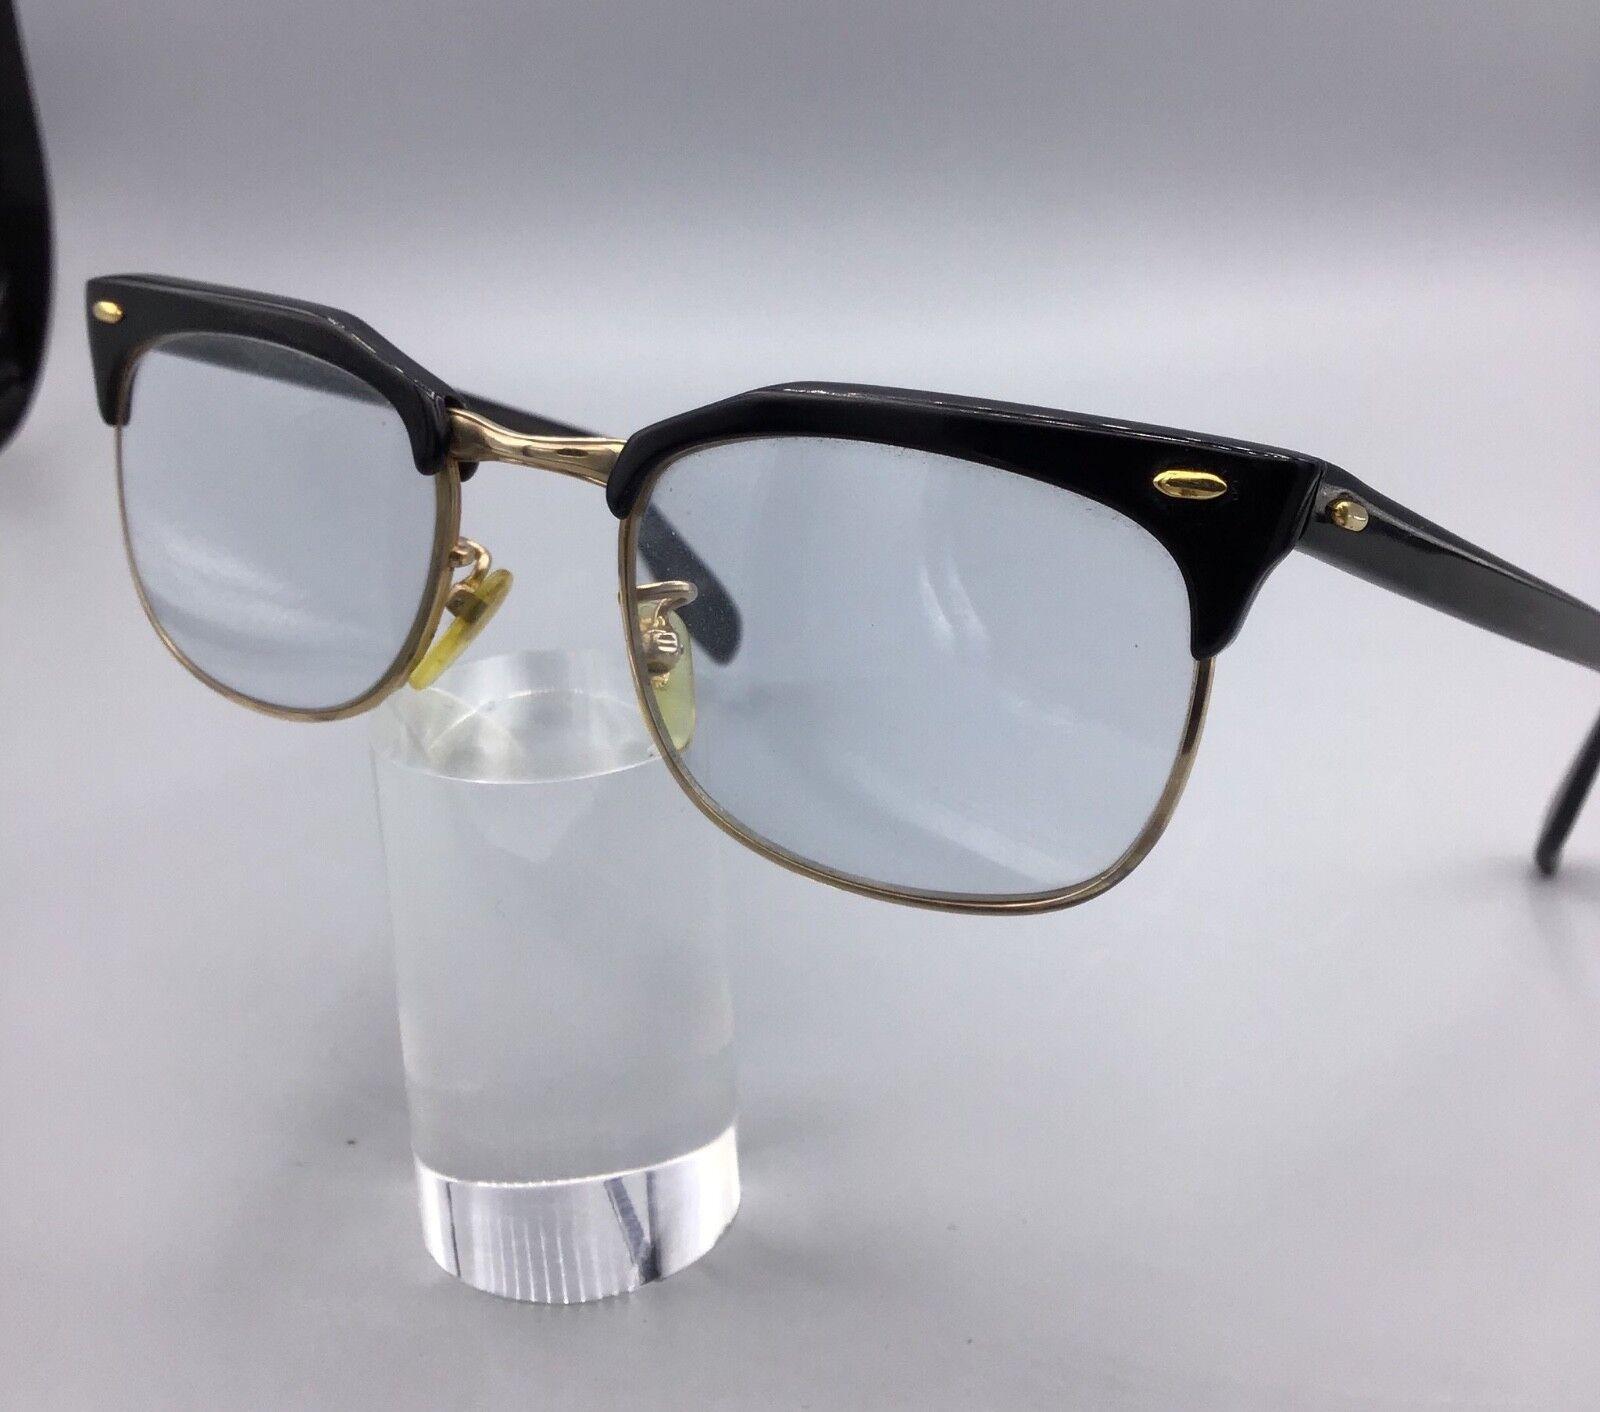 ViennaLine occhiale brillen eyewear vintage glasses lunettes